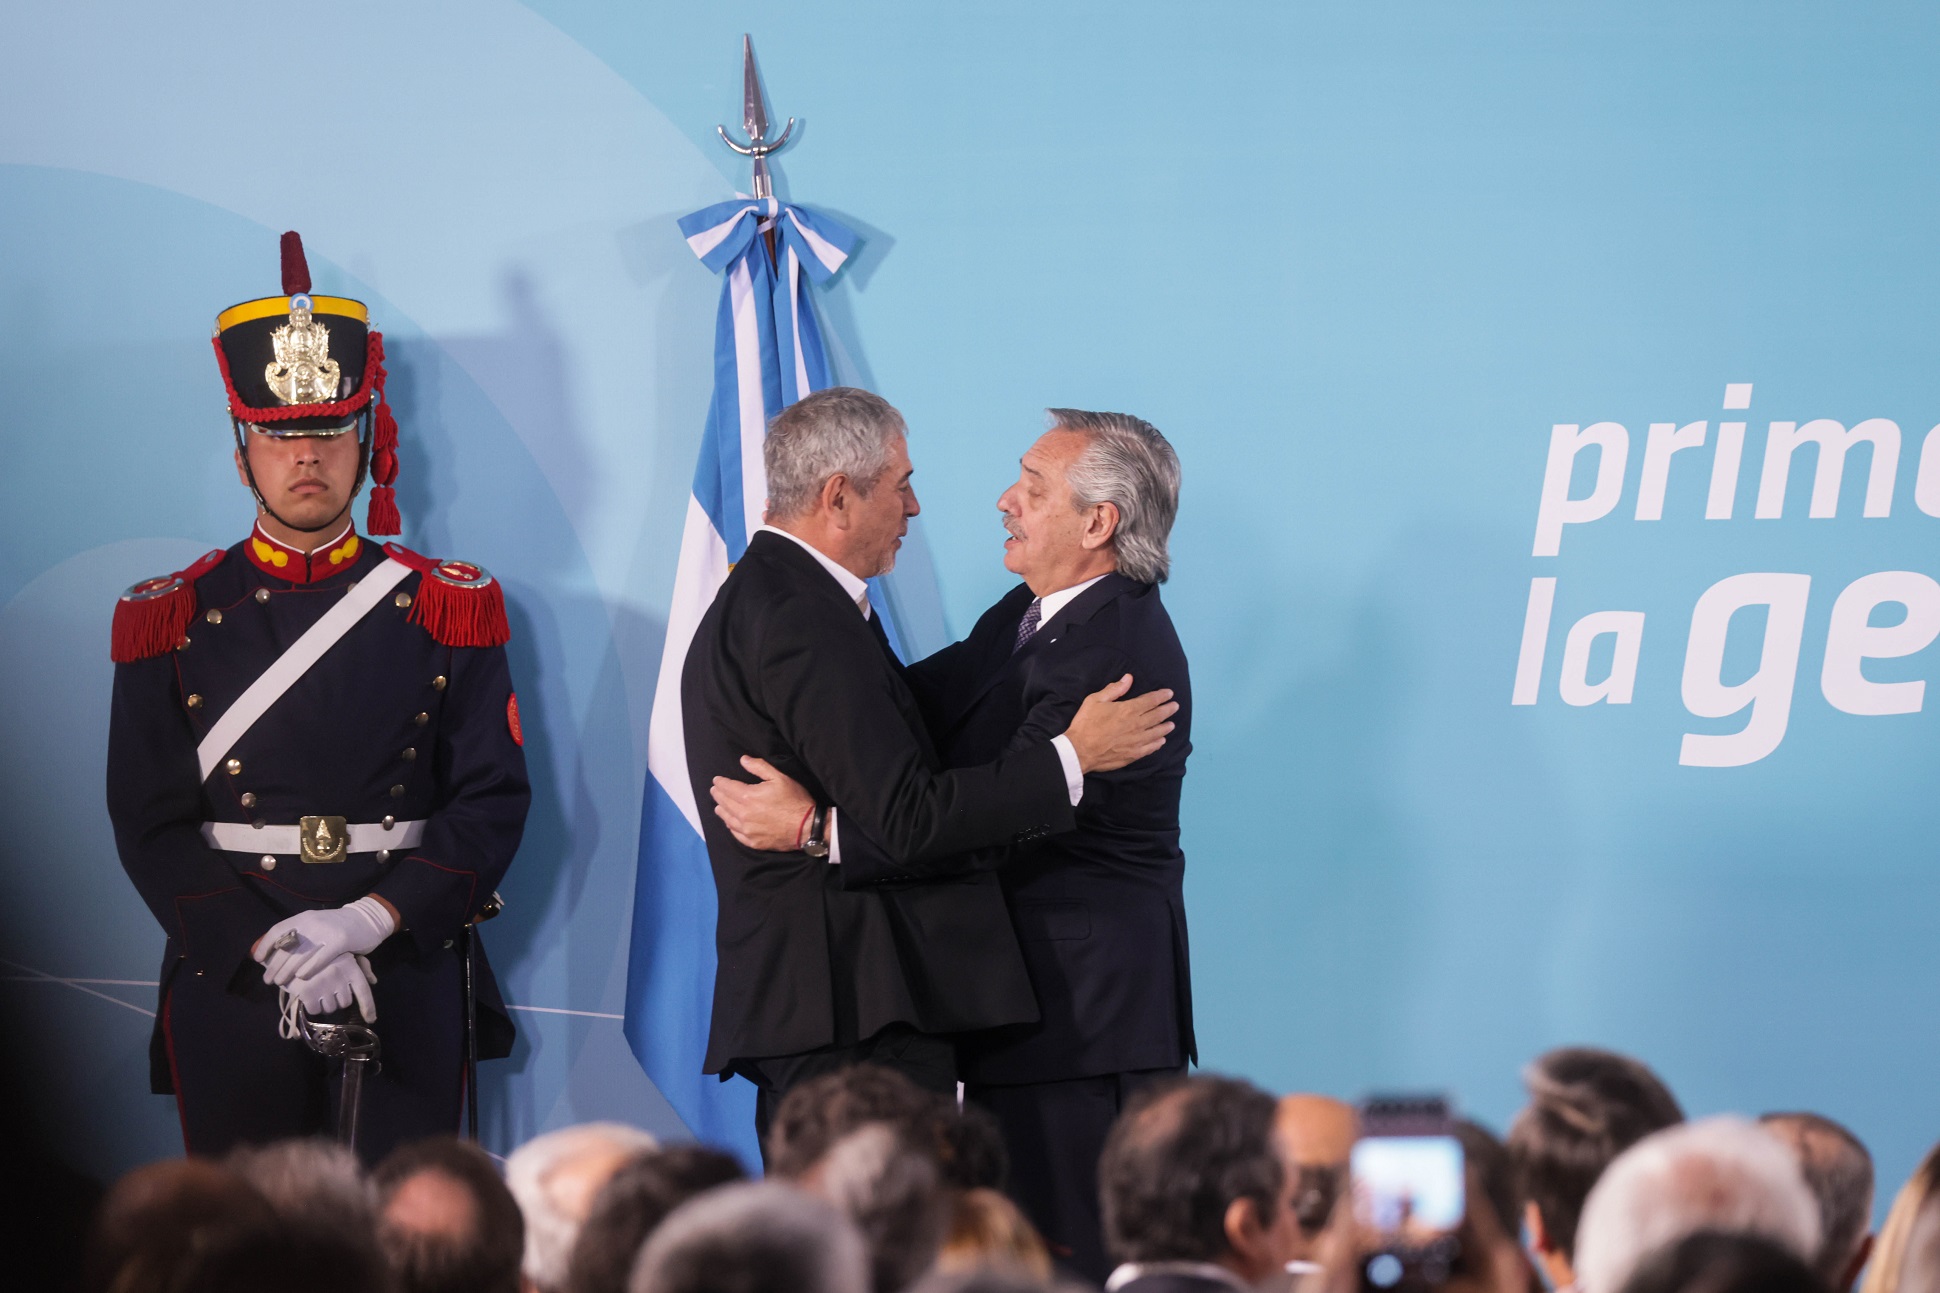 El presidente tomó juramento al nuevo ministro de Desarrollo Territorial y Hábitat, Santiago Maggiotti